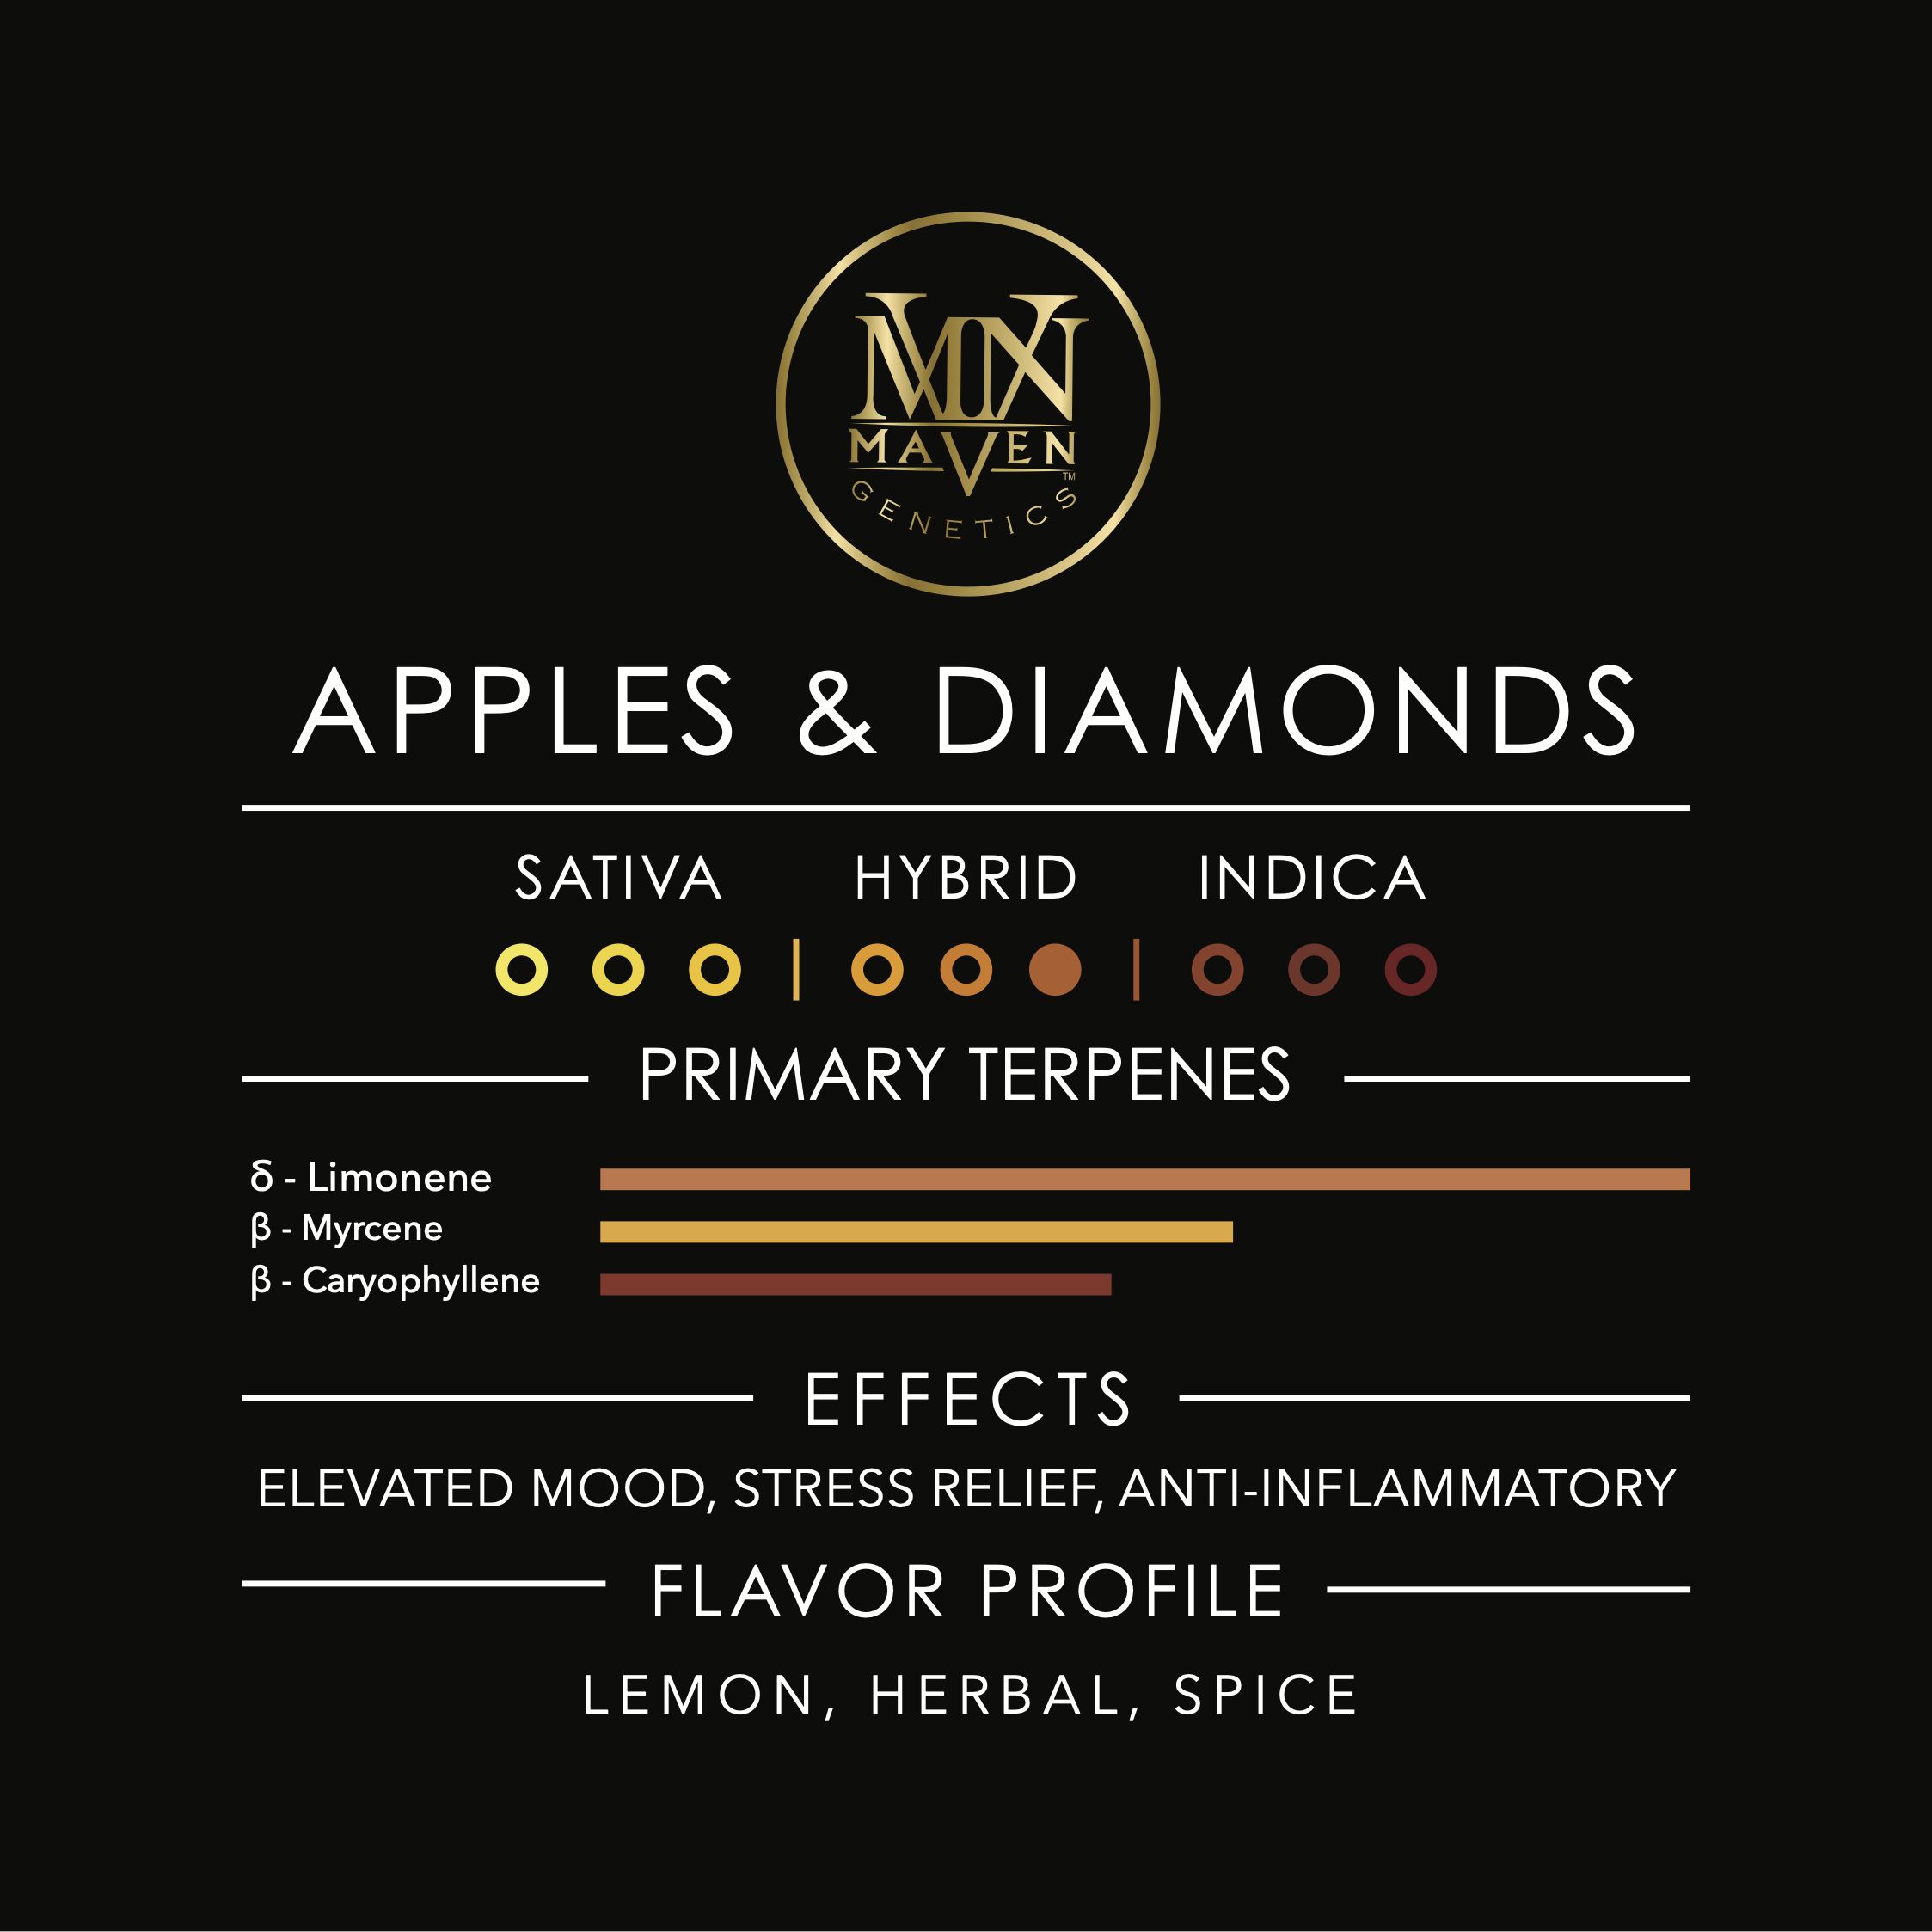 Apples & Diamonds